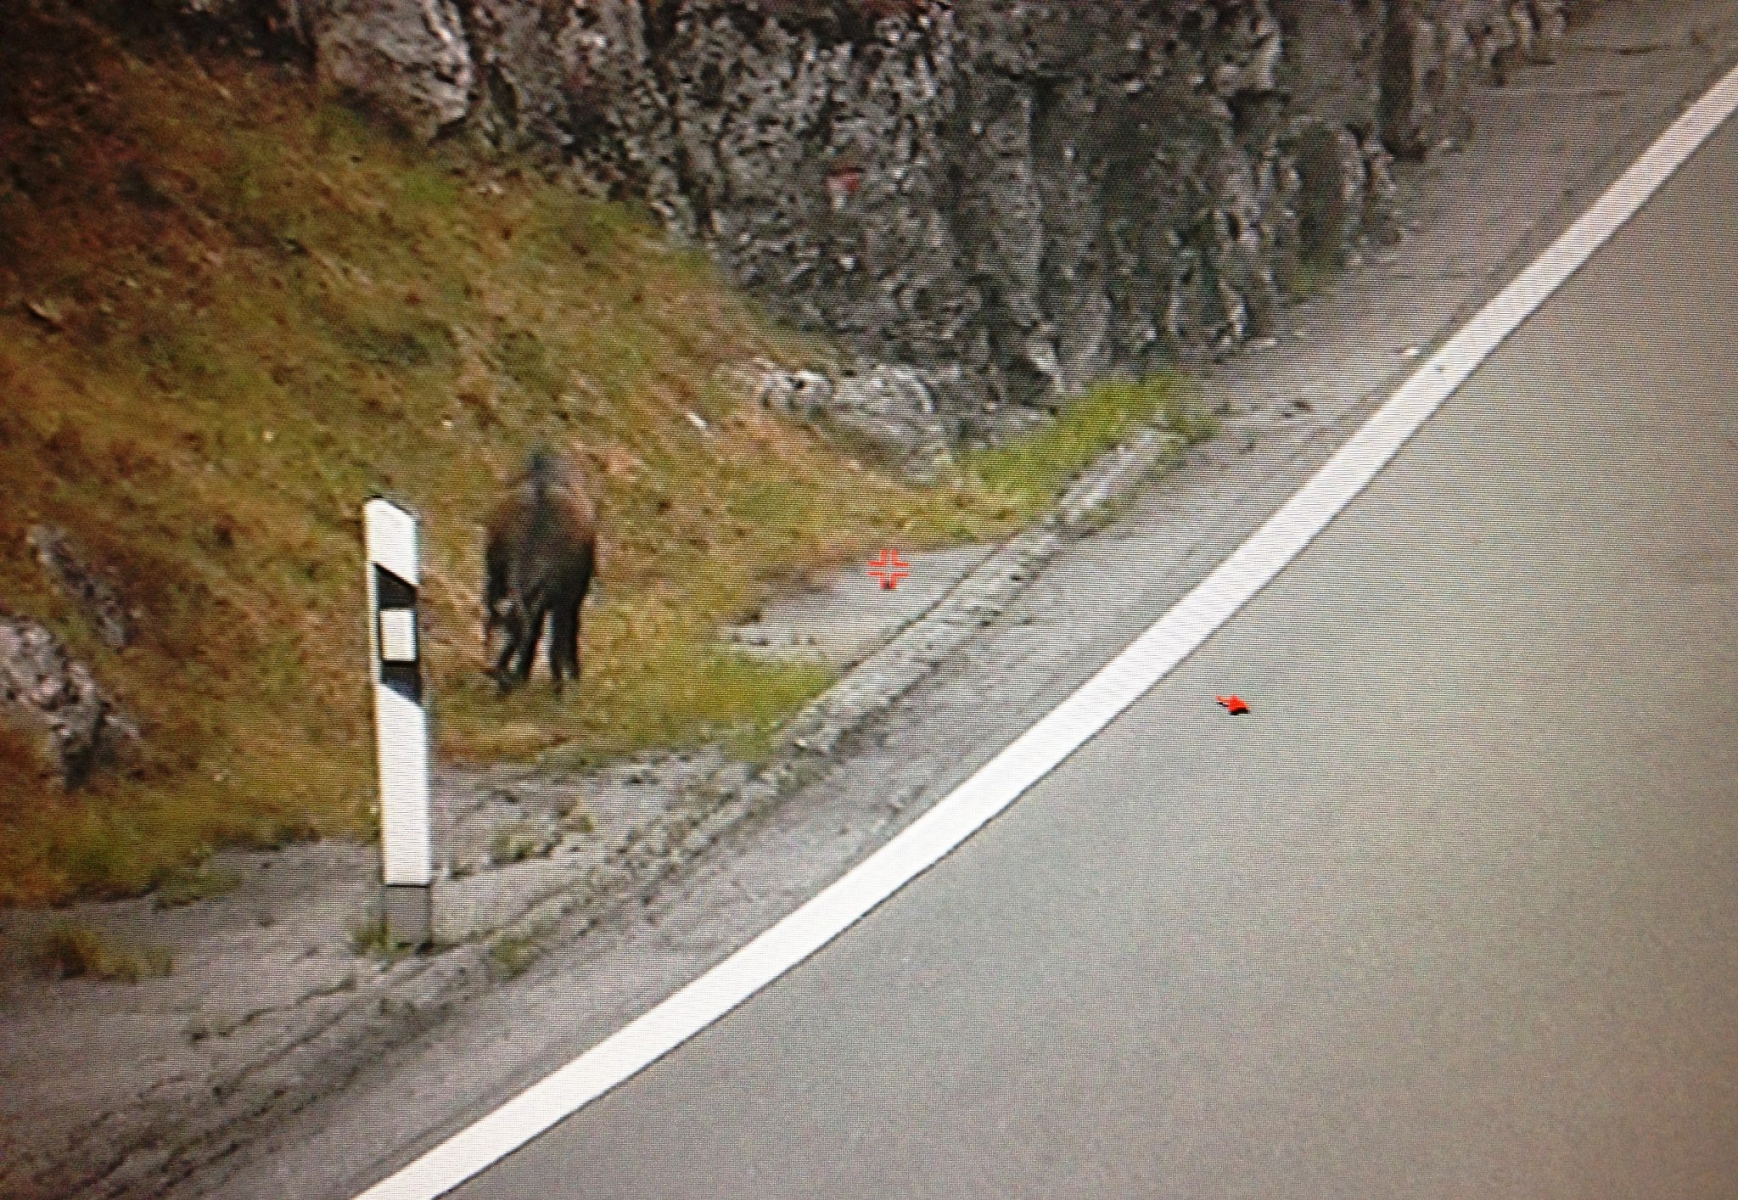 Depuis trois ans, le chamois vient régulièrement paître au bord de la route sans se préoccuper du flot de véhicules.